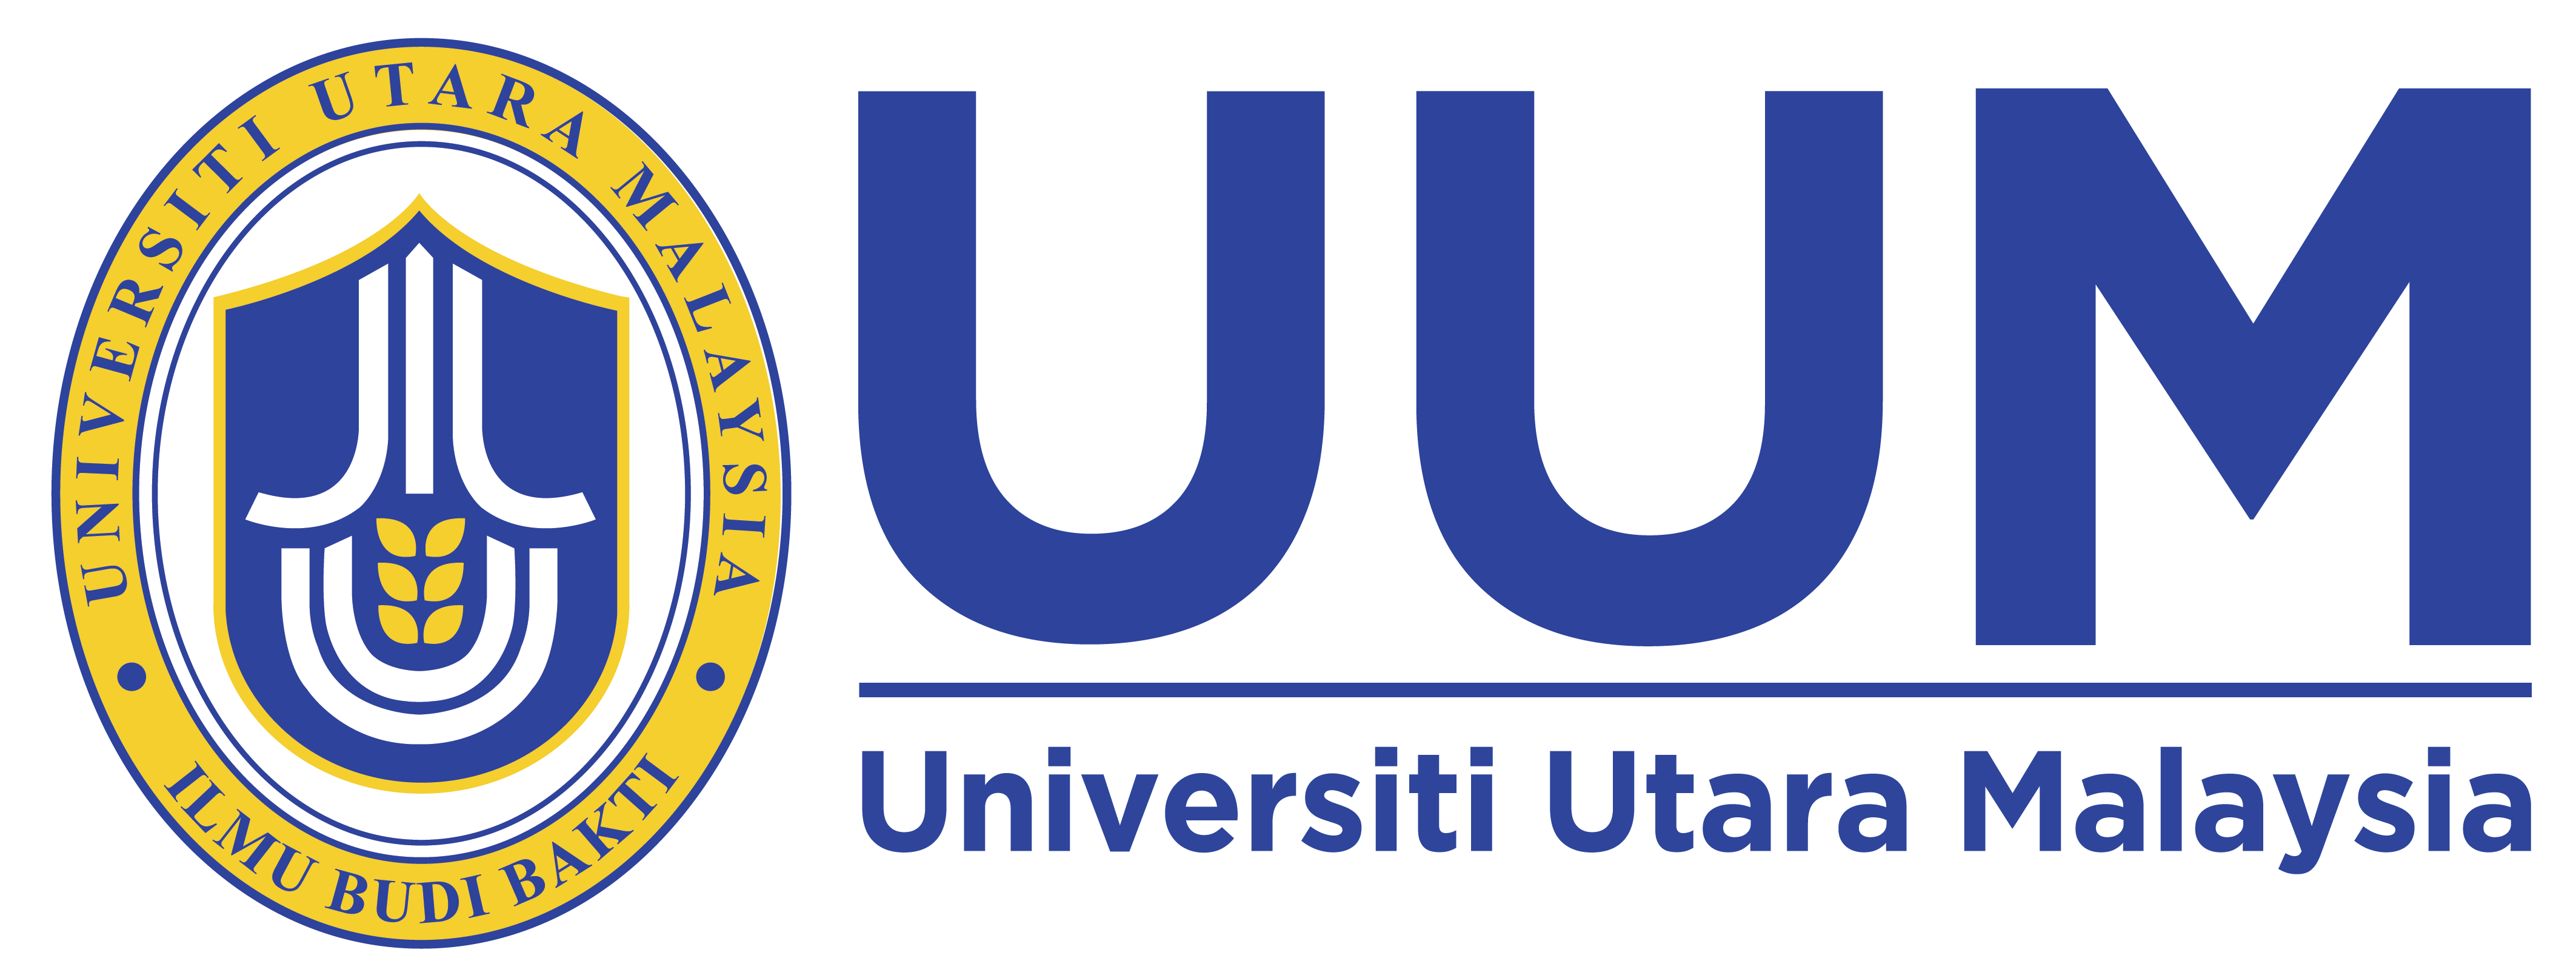 Logo of University Utara Malaysia (UUM)